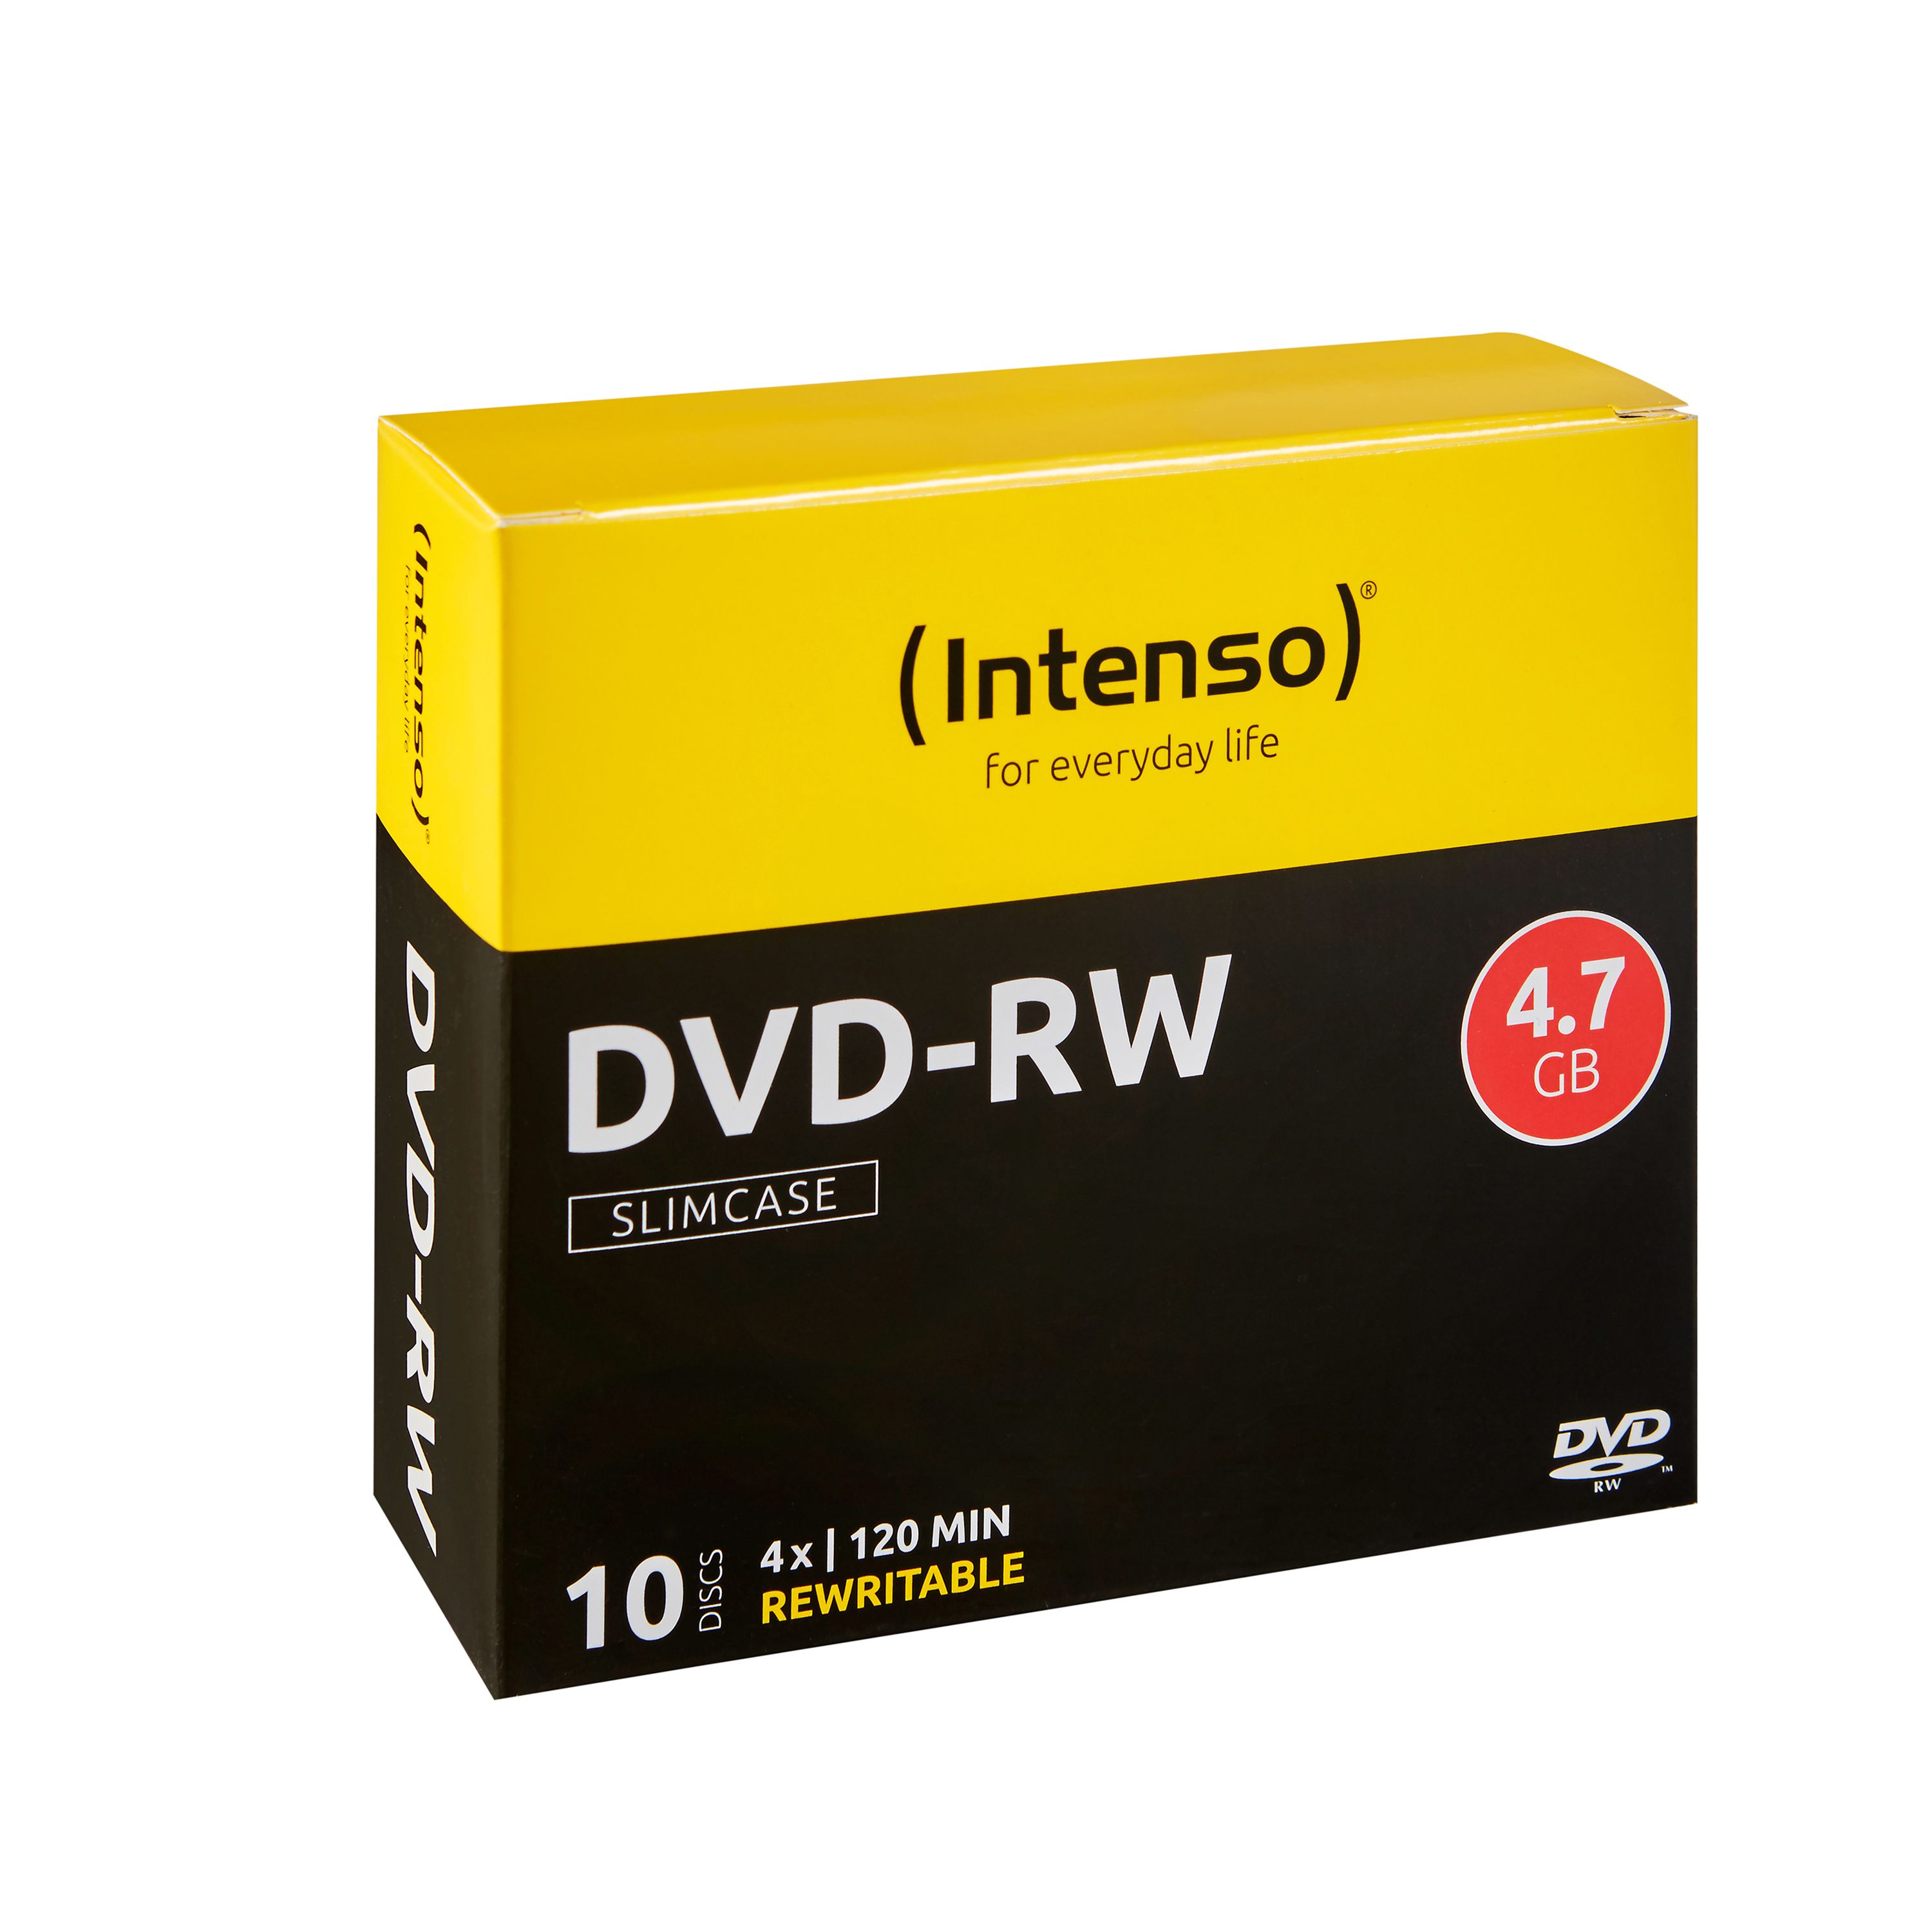 DVD-RW 4.7GB, 4x